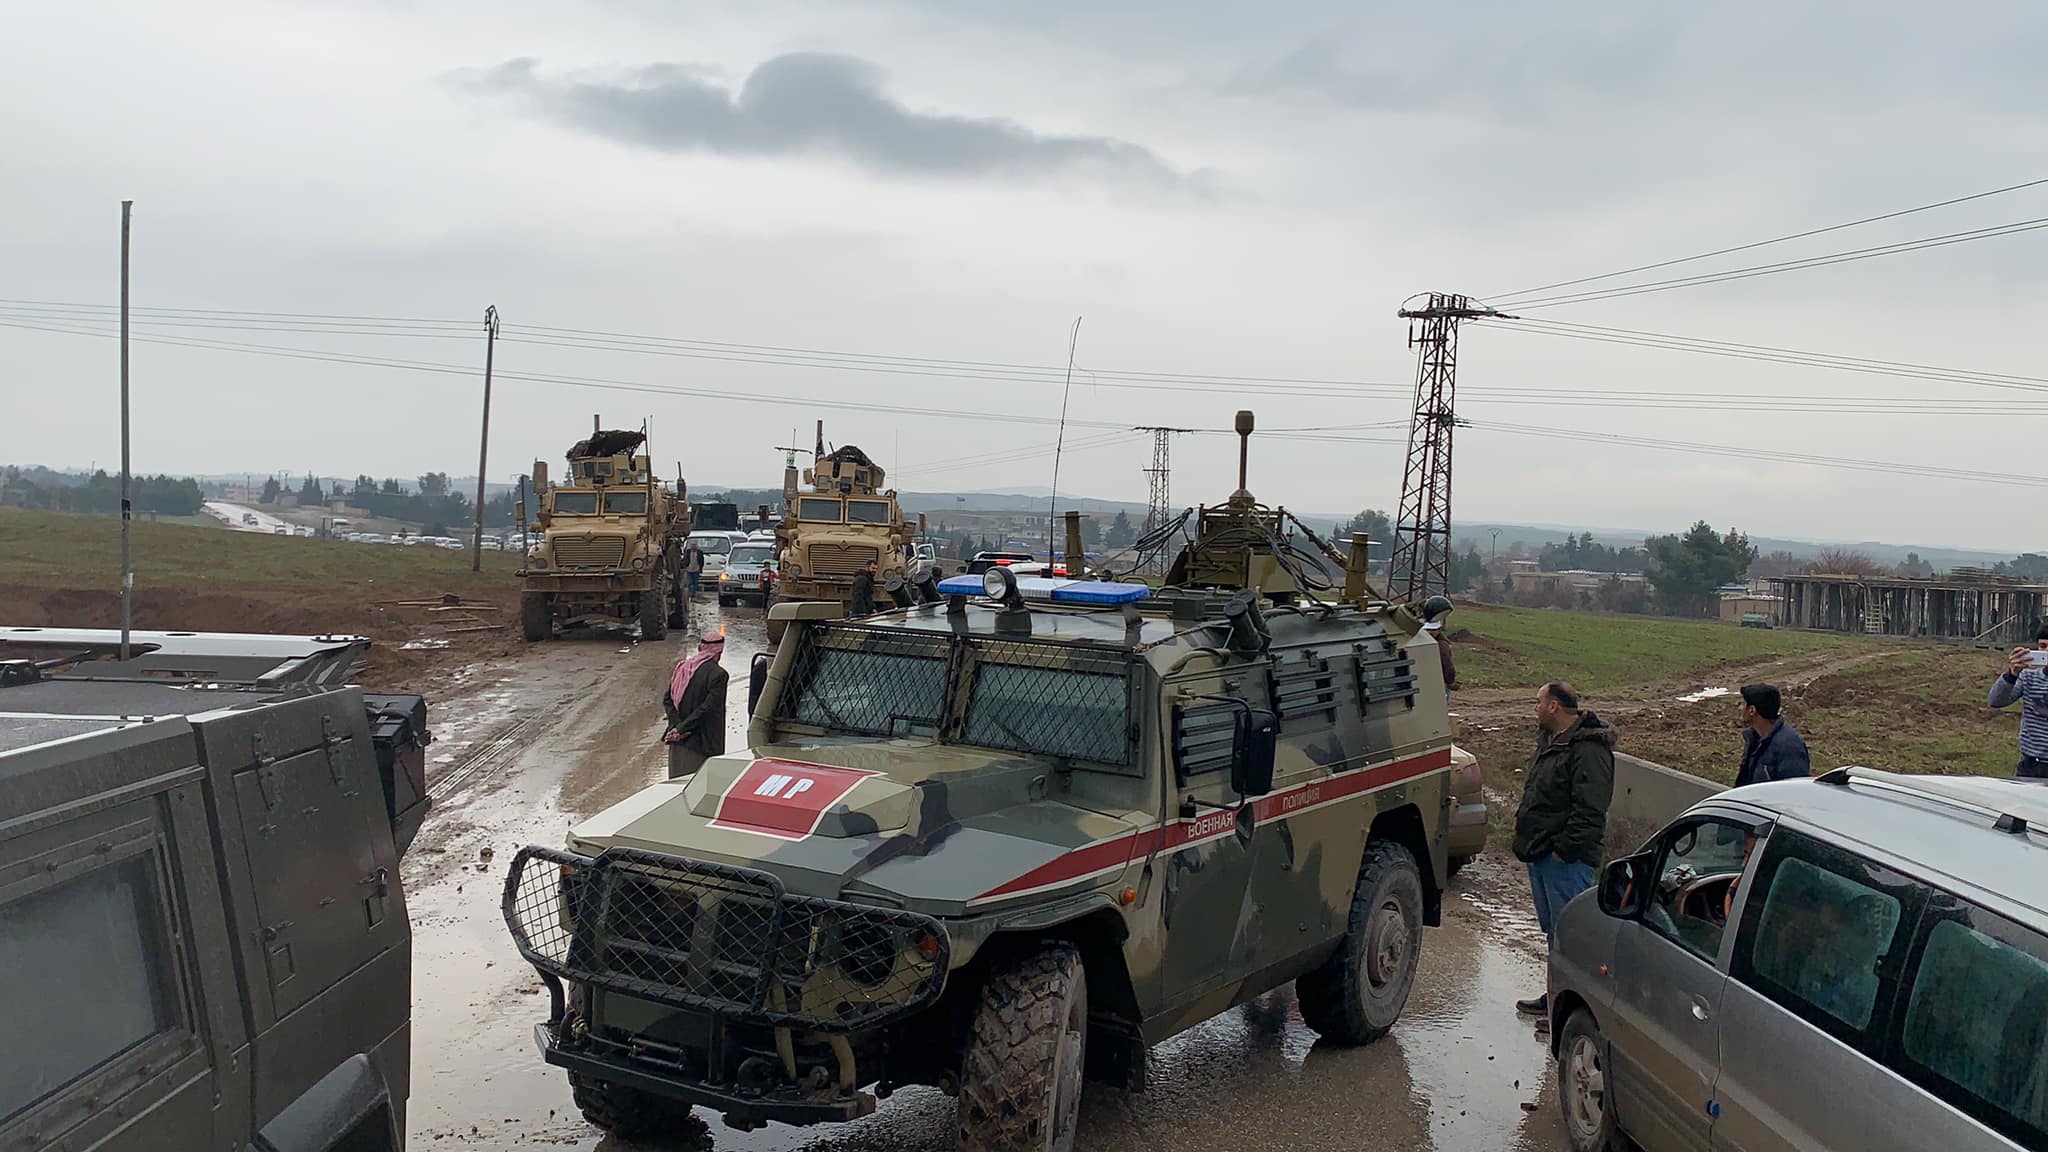 دورية عسكرية أمريكية تعترض قافلة عسكرية روسية على الطريق بين رميلان وديريك- 21 كانون الثاني 2020 (محمد الحسن مراسل قناة روسيا اليوم)